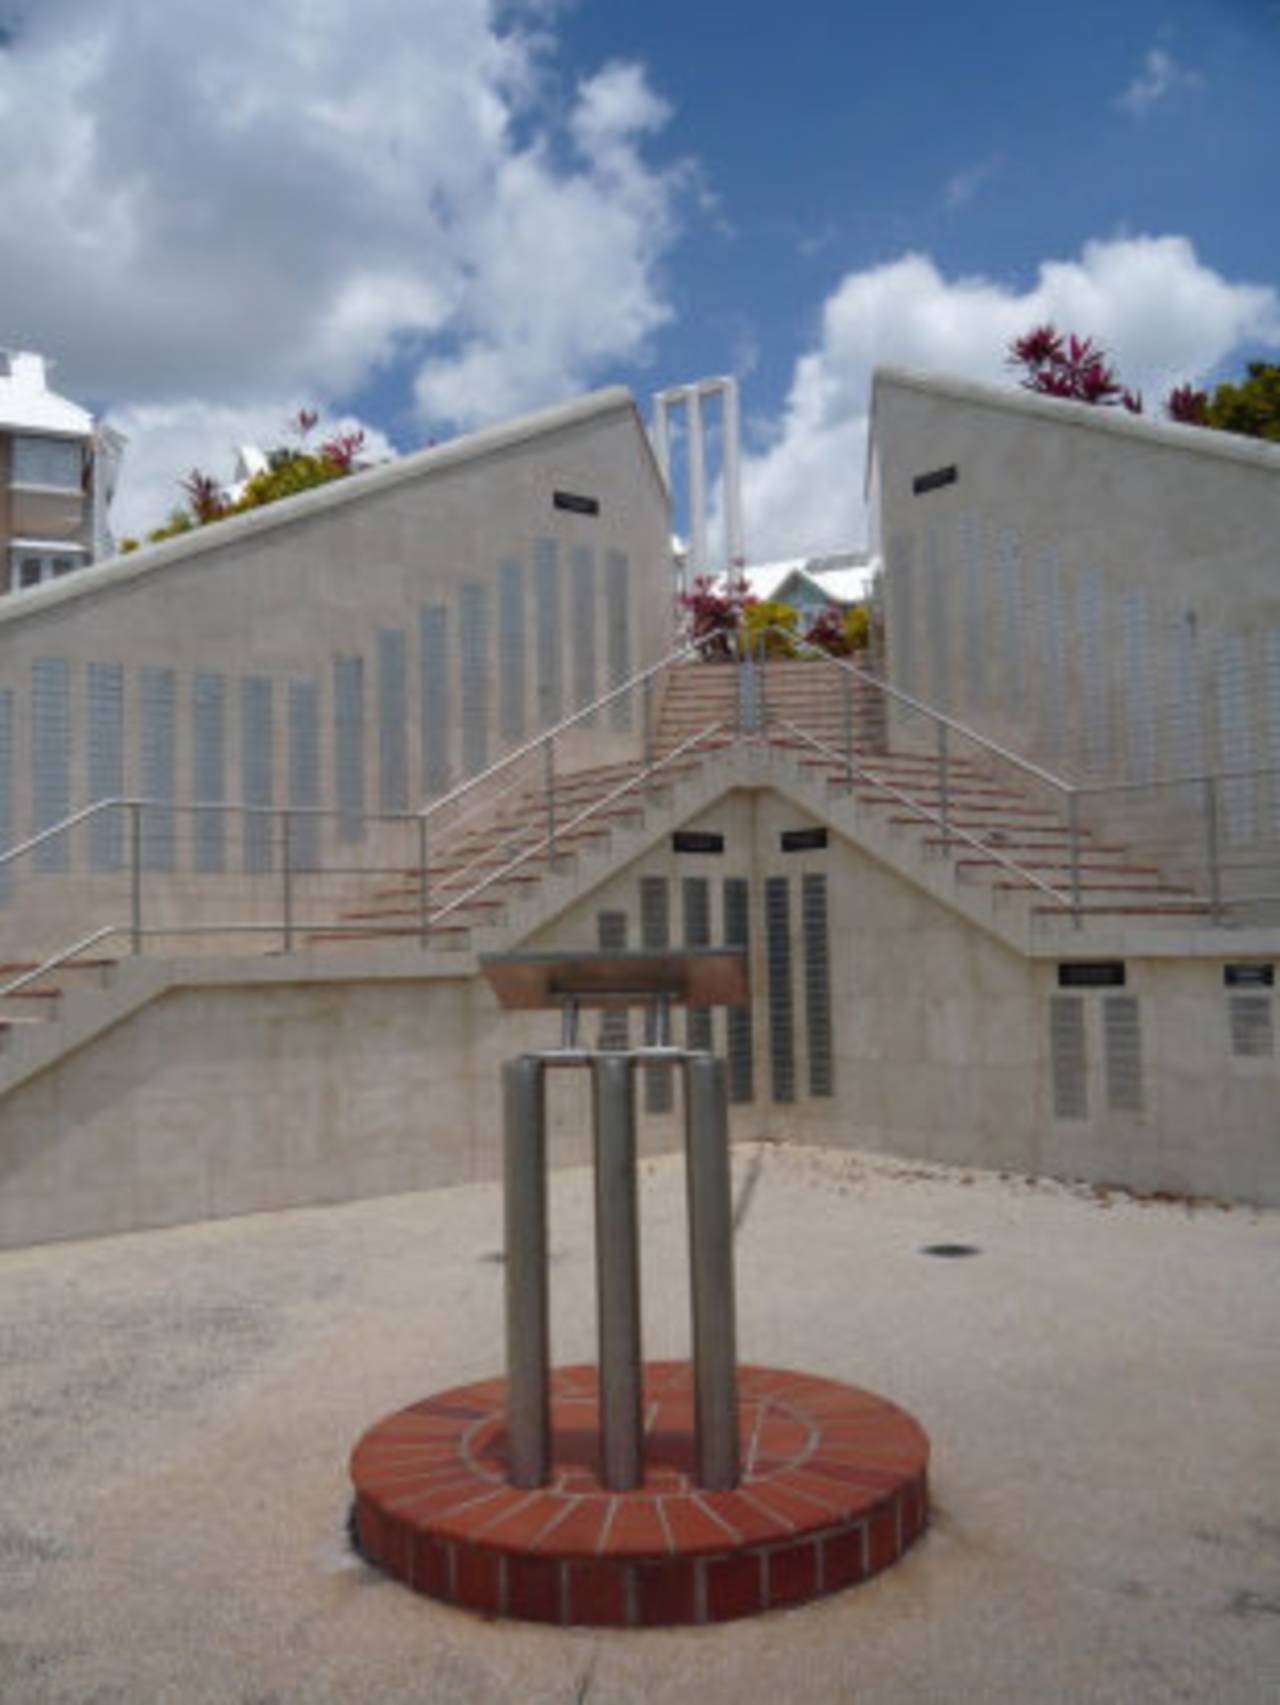 The memorial at the Three Ws Oval&nbsp;&nbsp;&bull;&nbsp;&nbsp;Dan Brettig/ESPNcricinfo Ltd